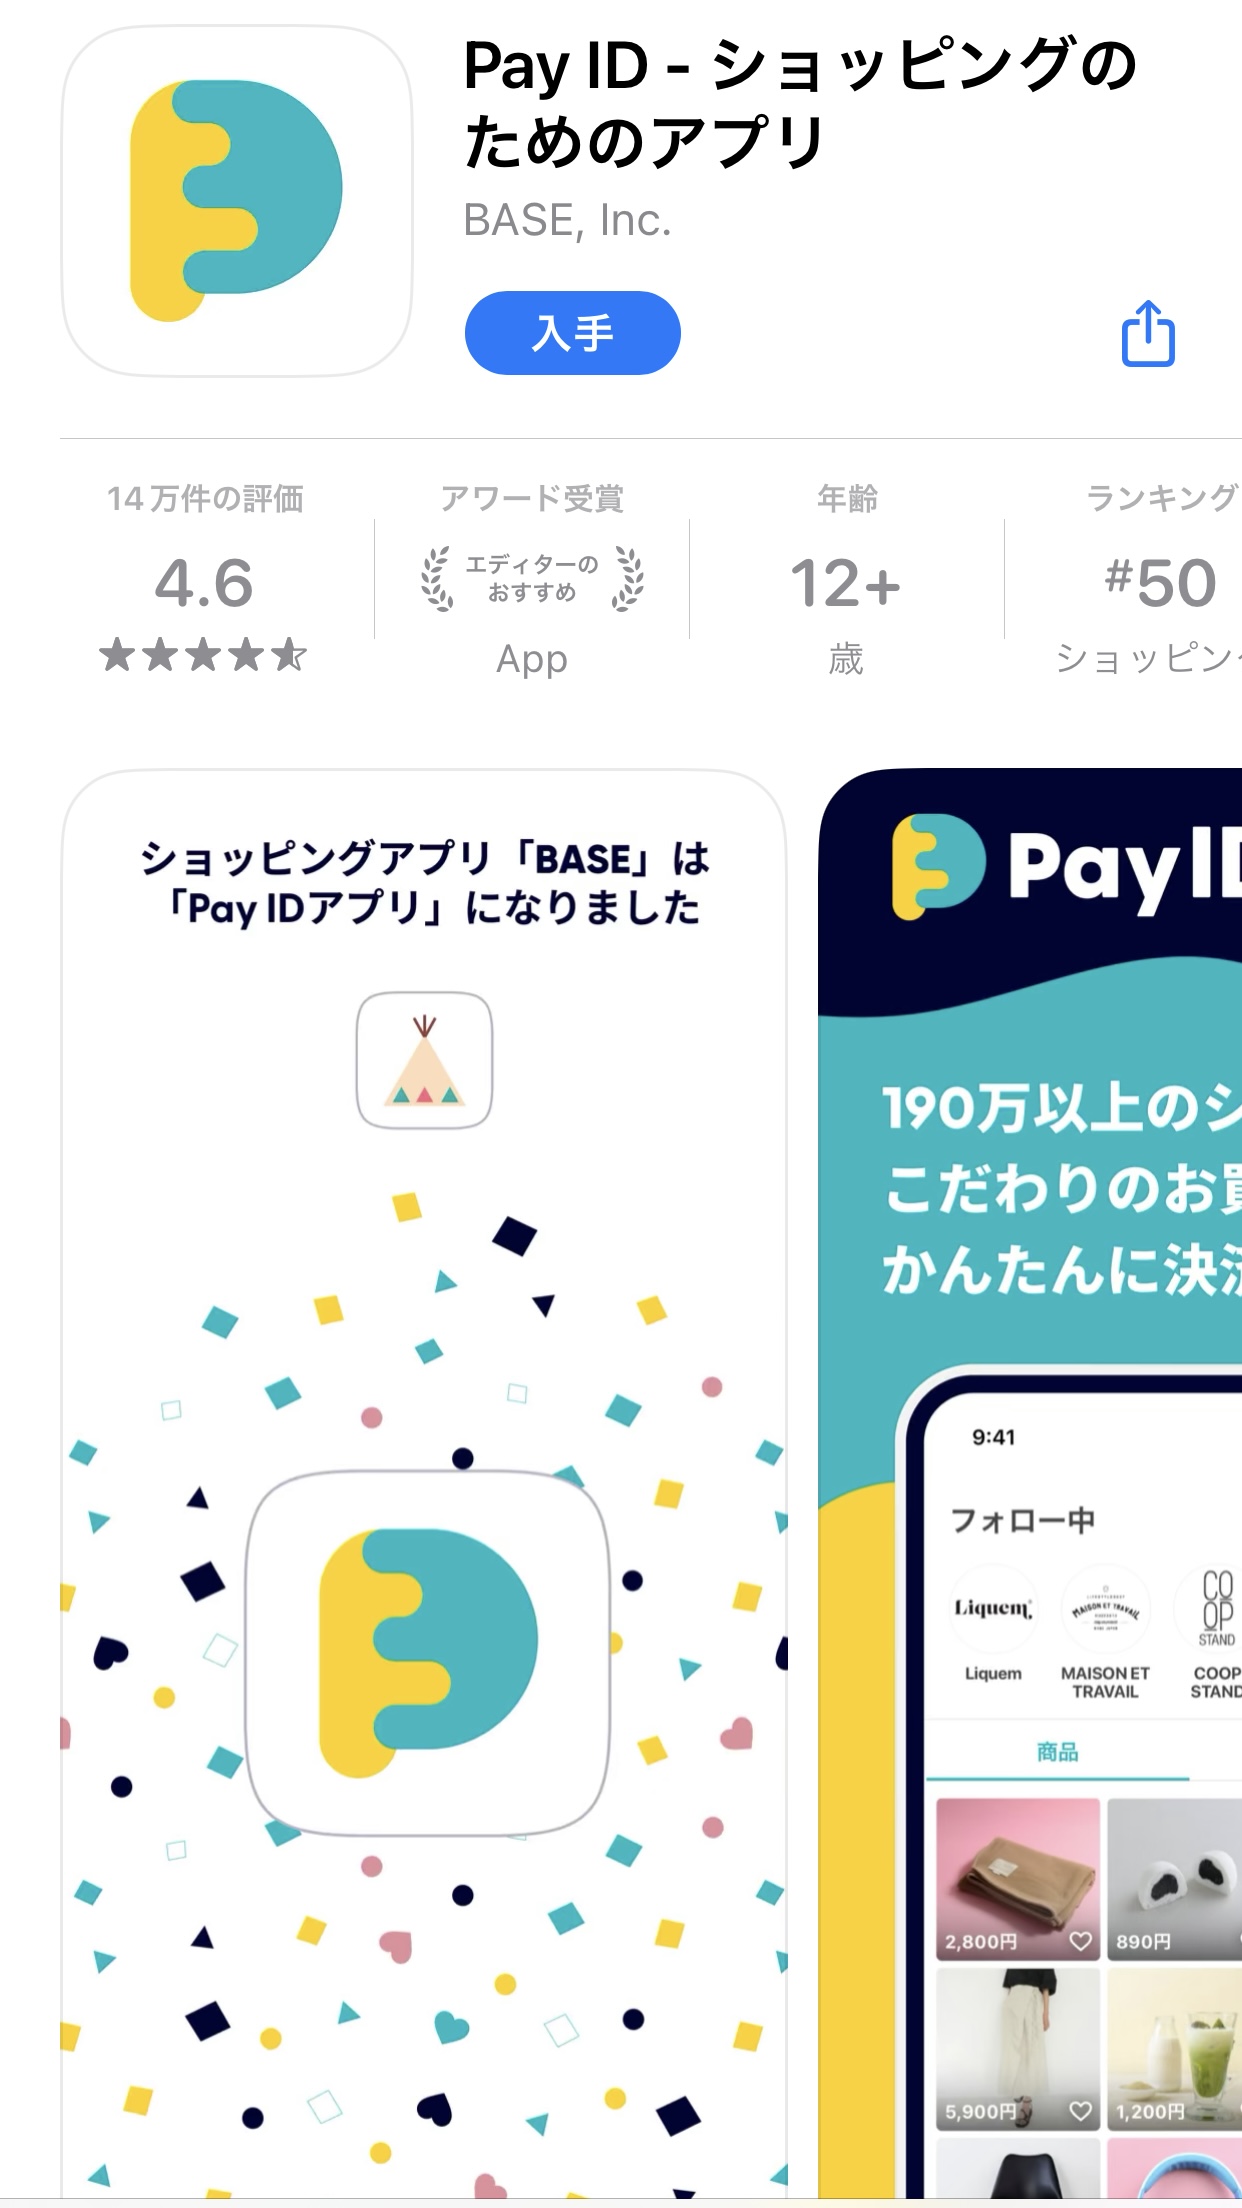 アプリ「Pay ID」について